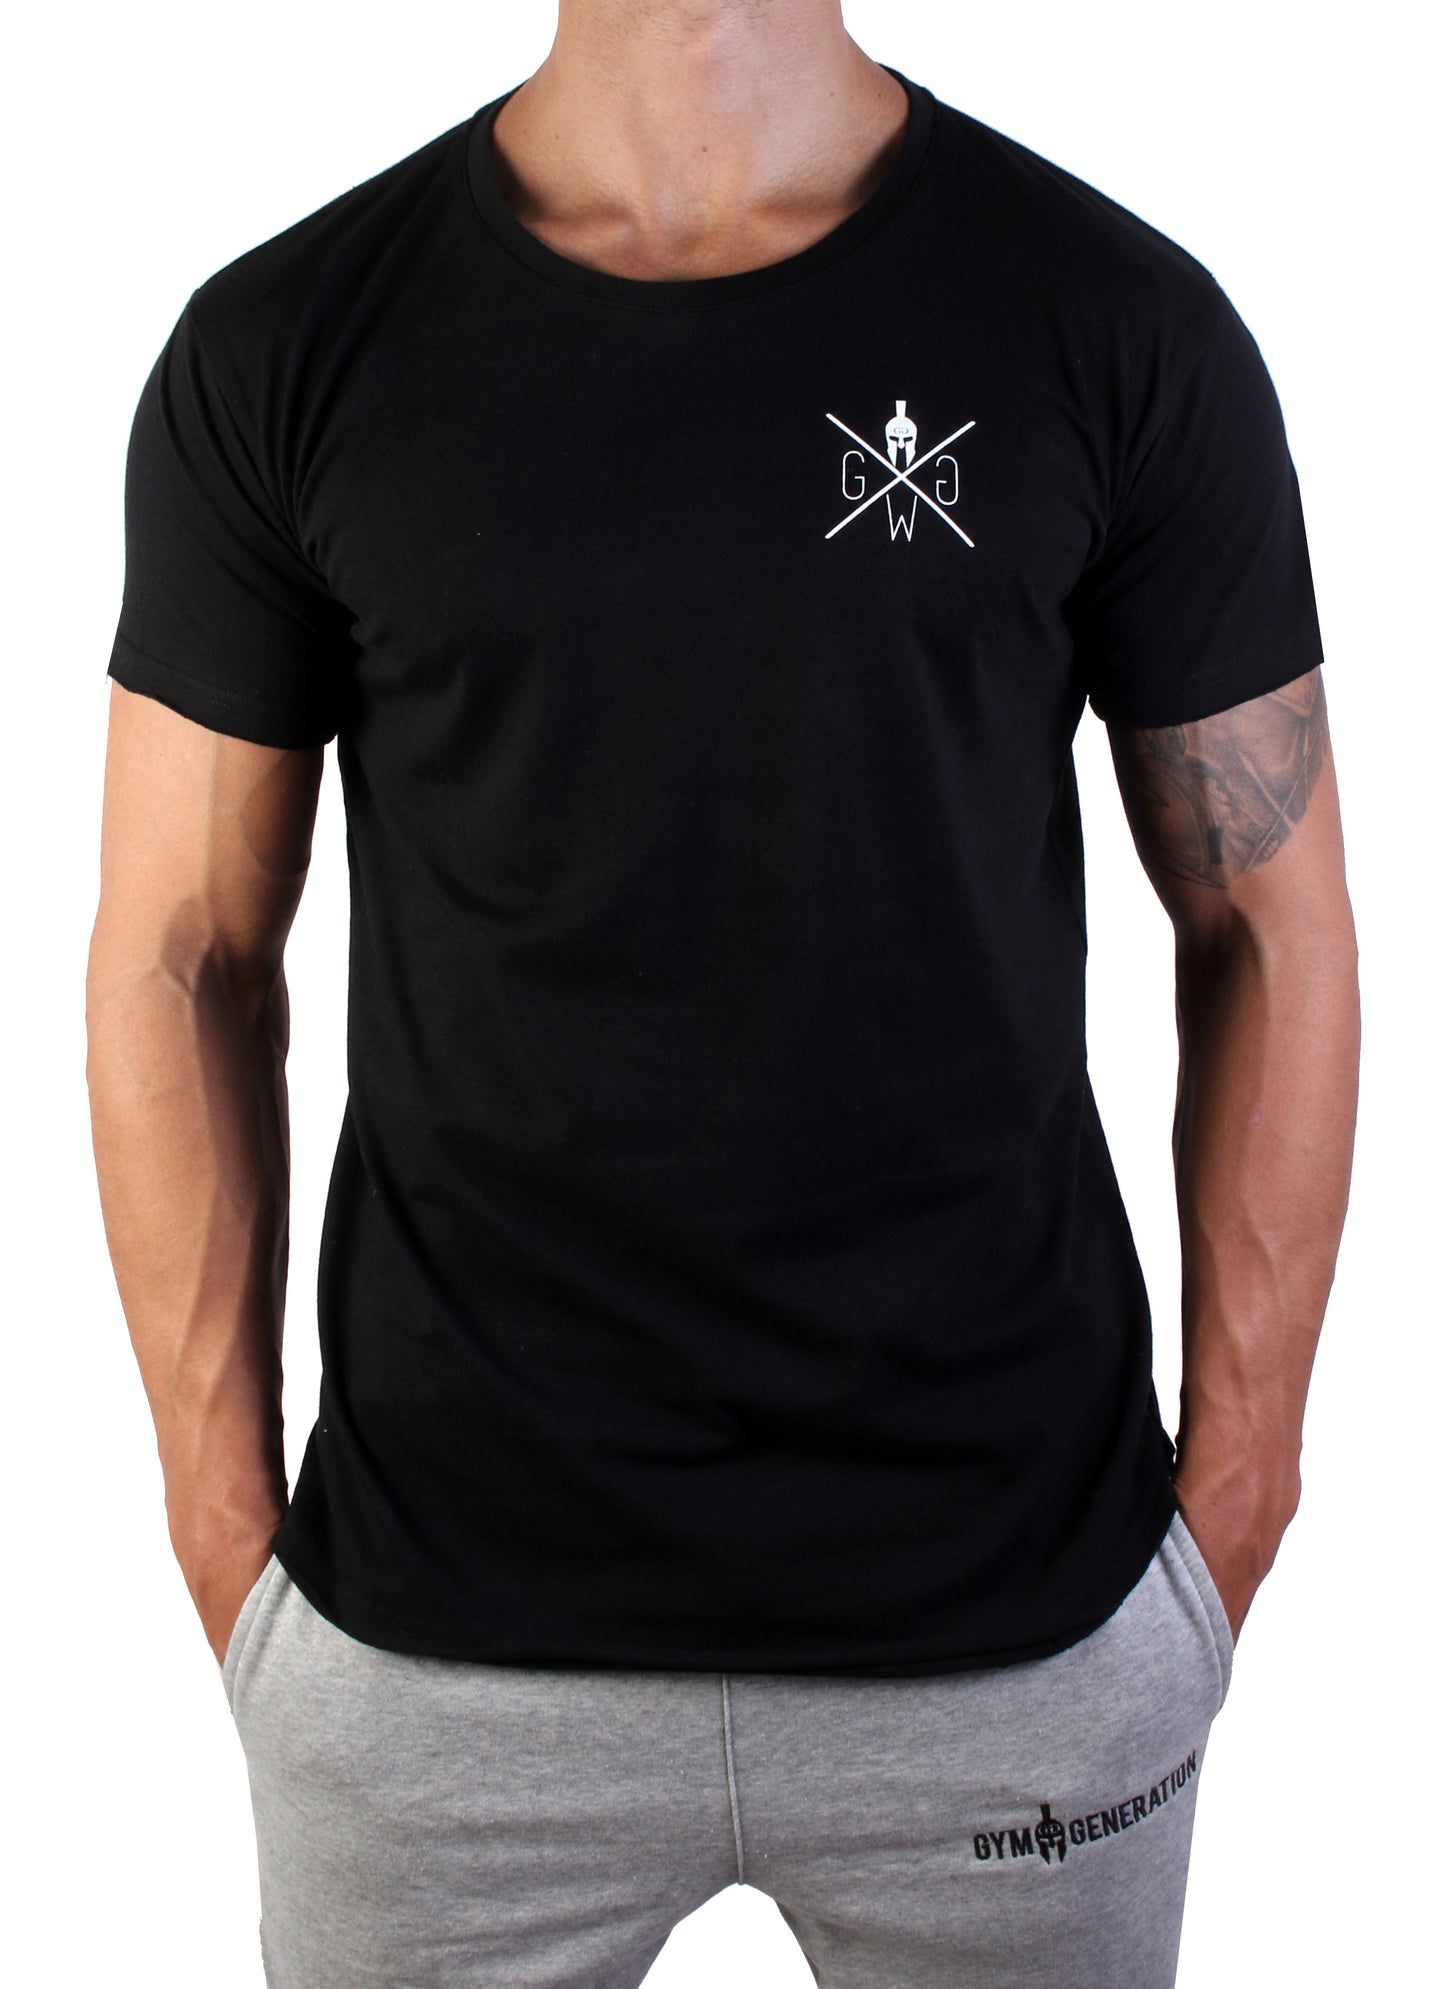 T-Shirt Warrior 89 - Noir